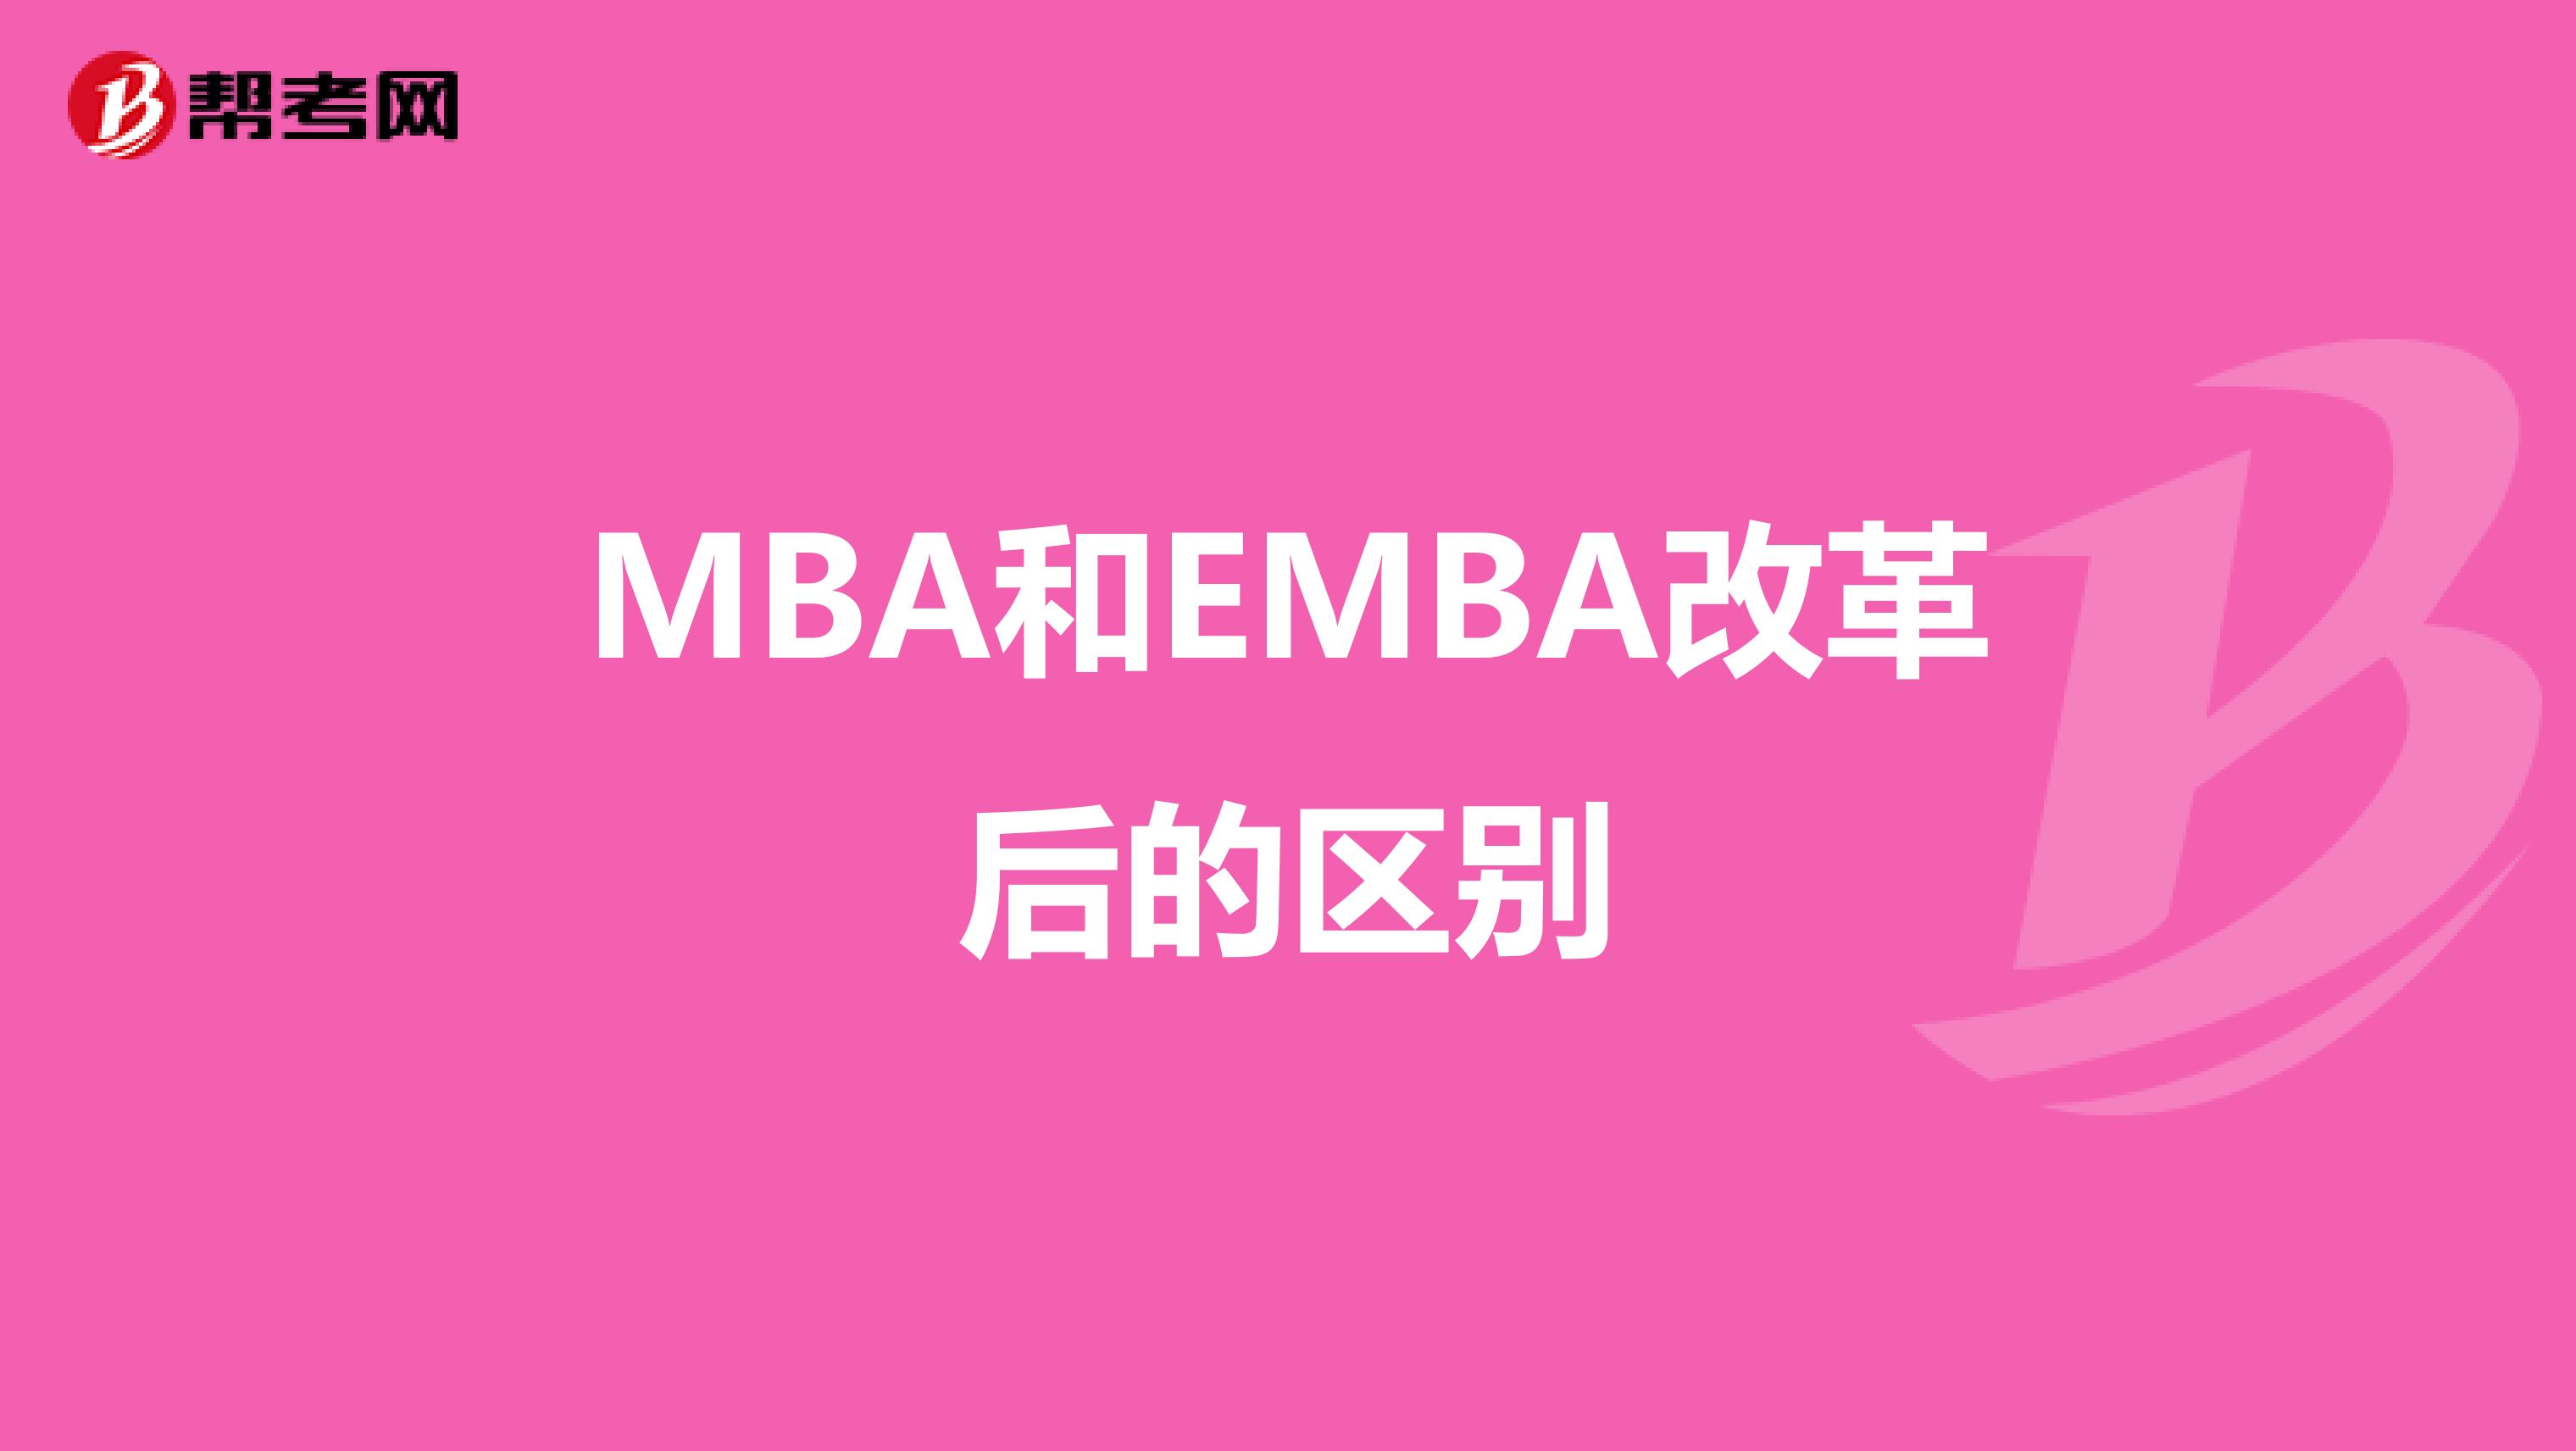 MBA和EMBA改革后的區別